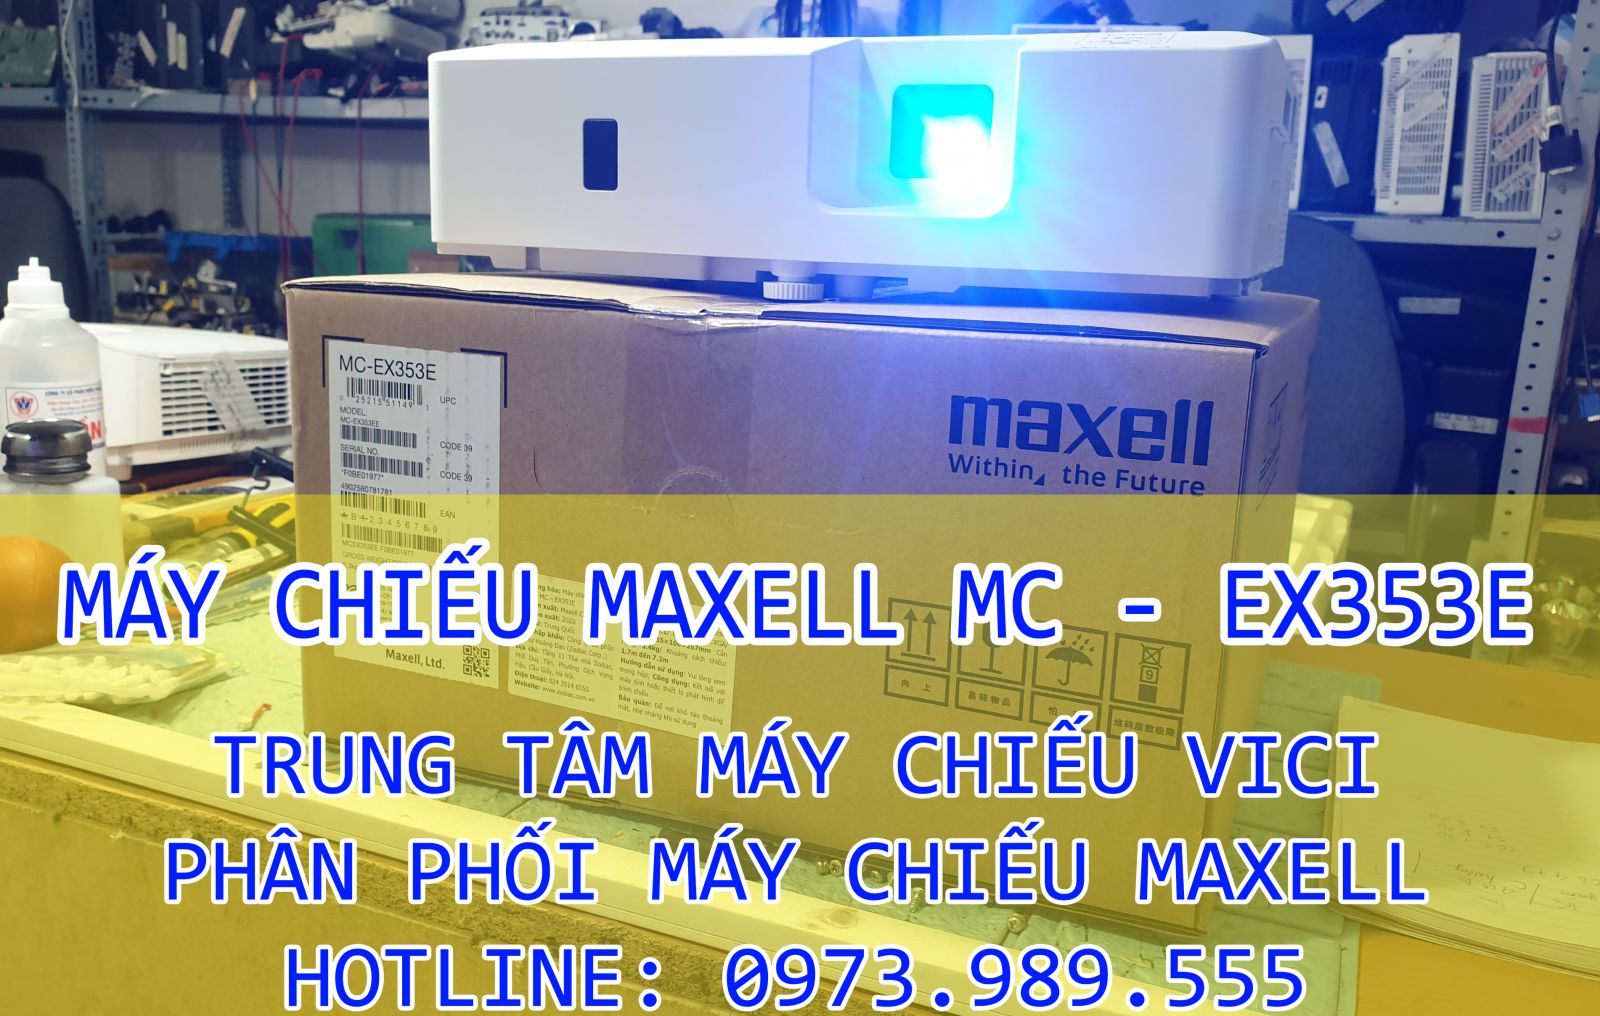 Maxell mc ex353